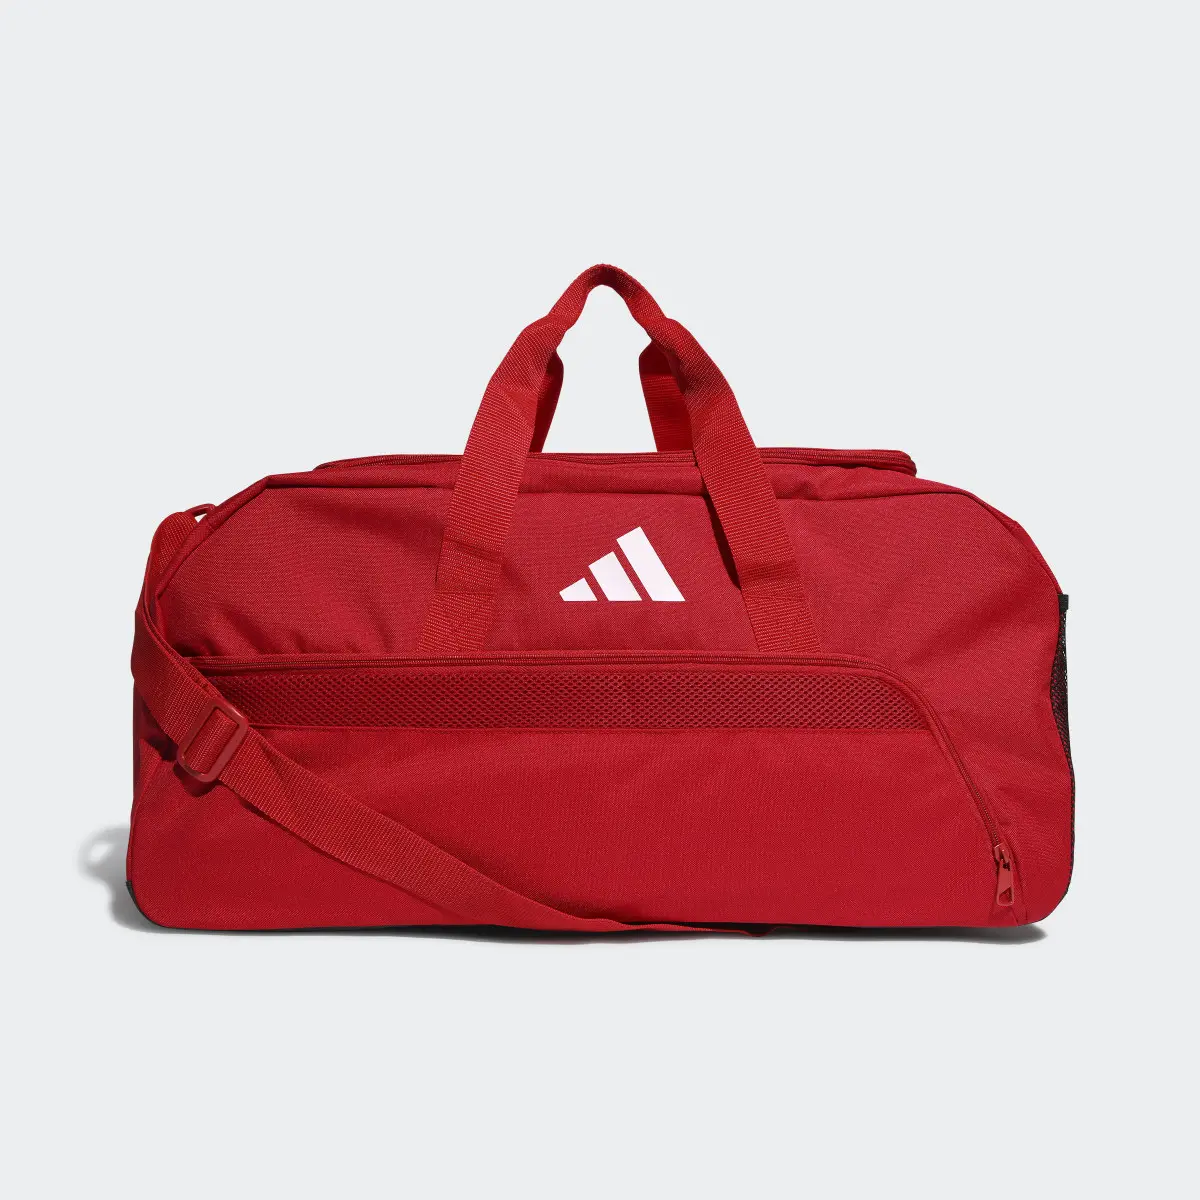 Adidas Tiro League Duffel Bag Medium. 2